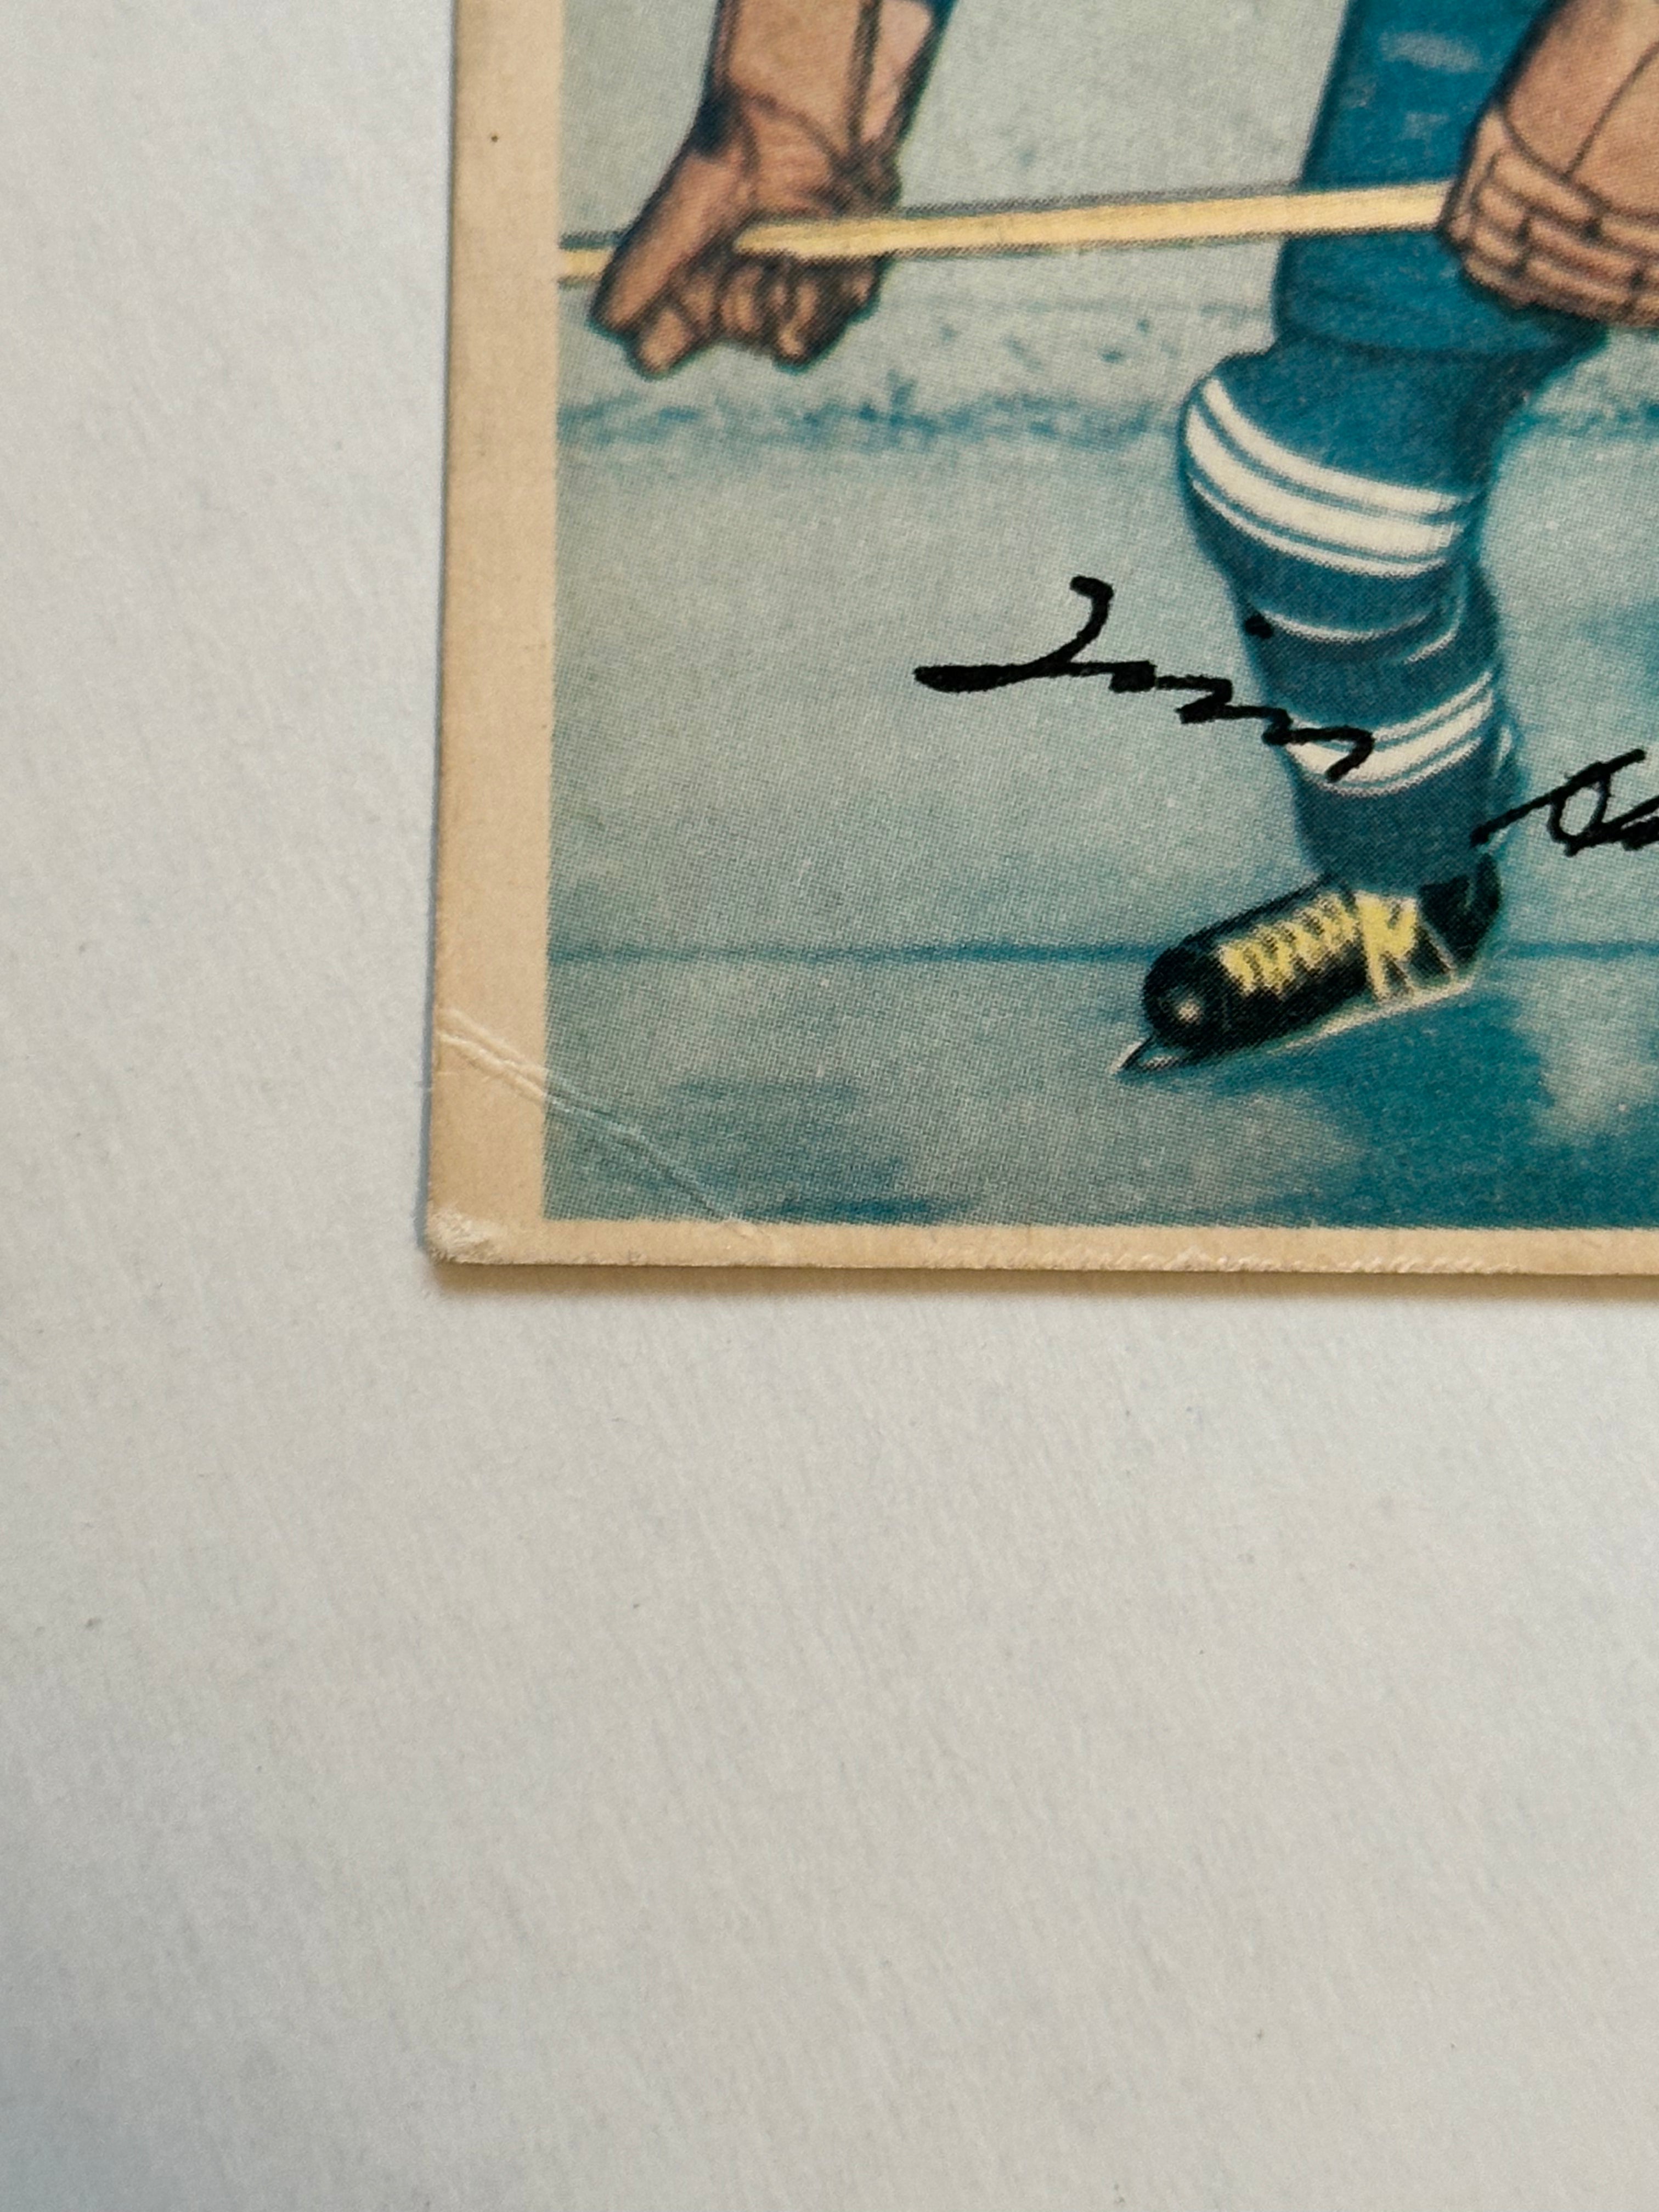 Tim Horton Leafs Legend rare original Parkhurst hockey card 1953-54